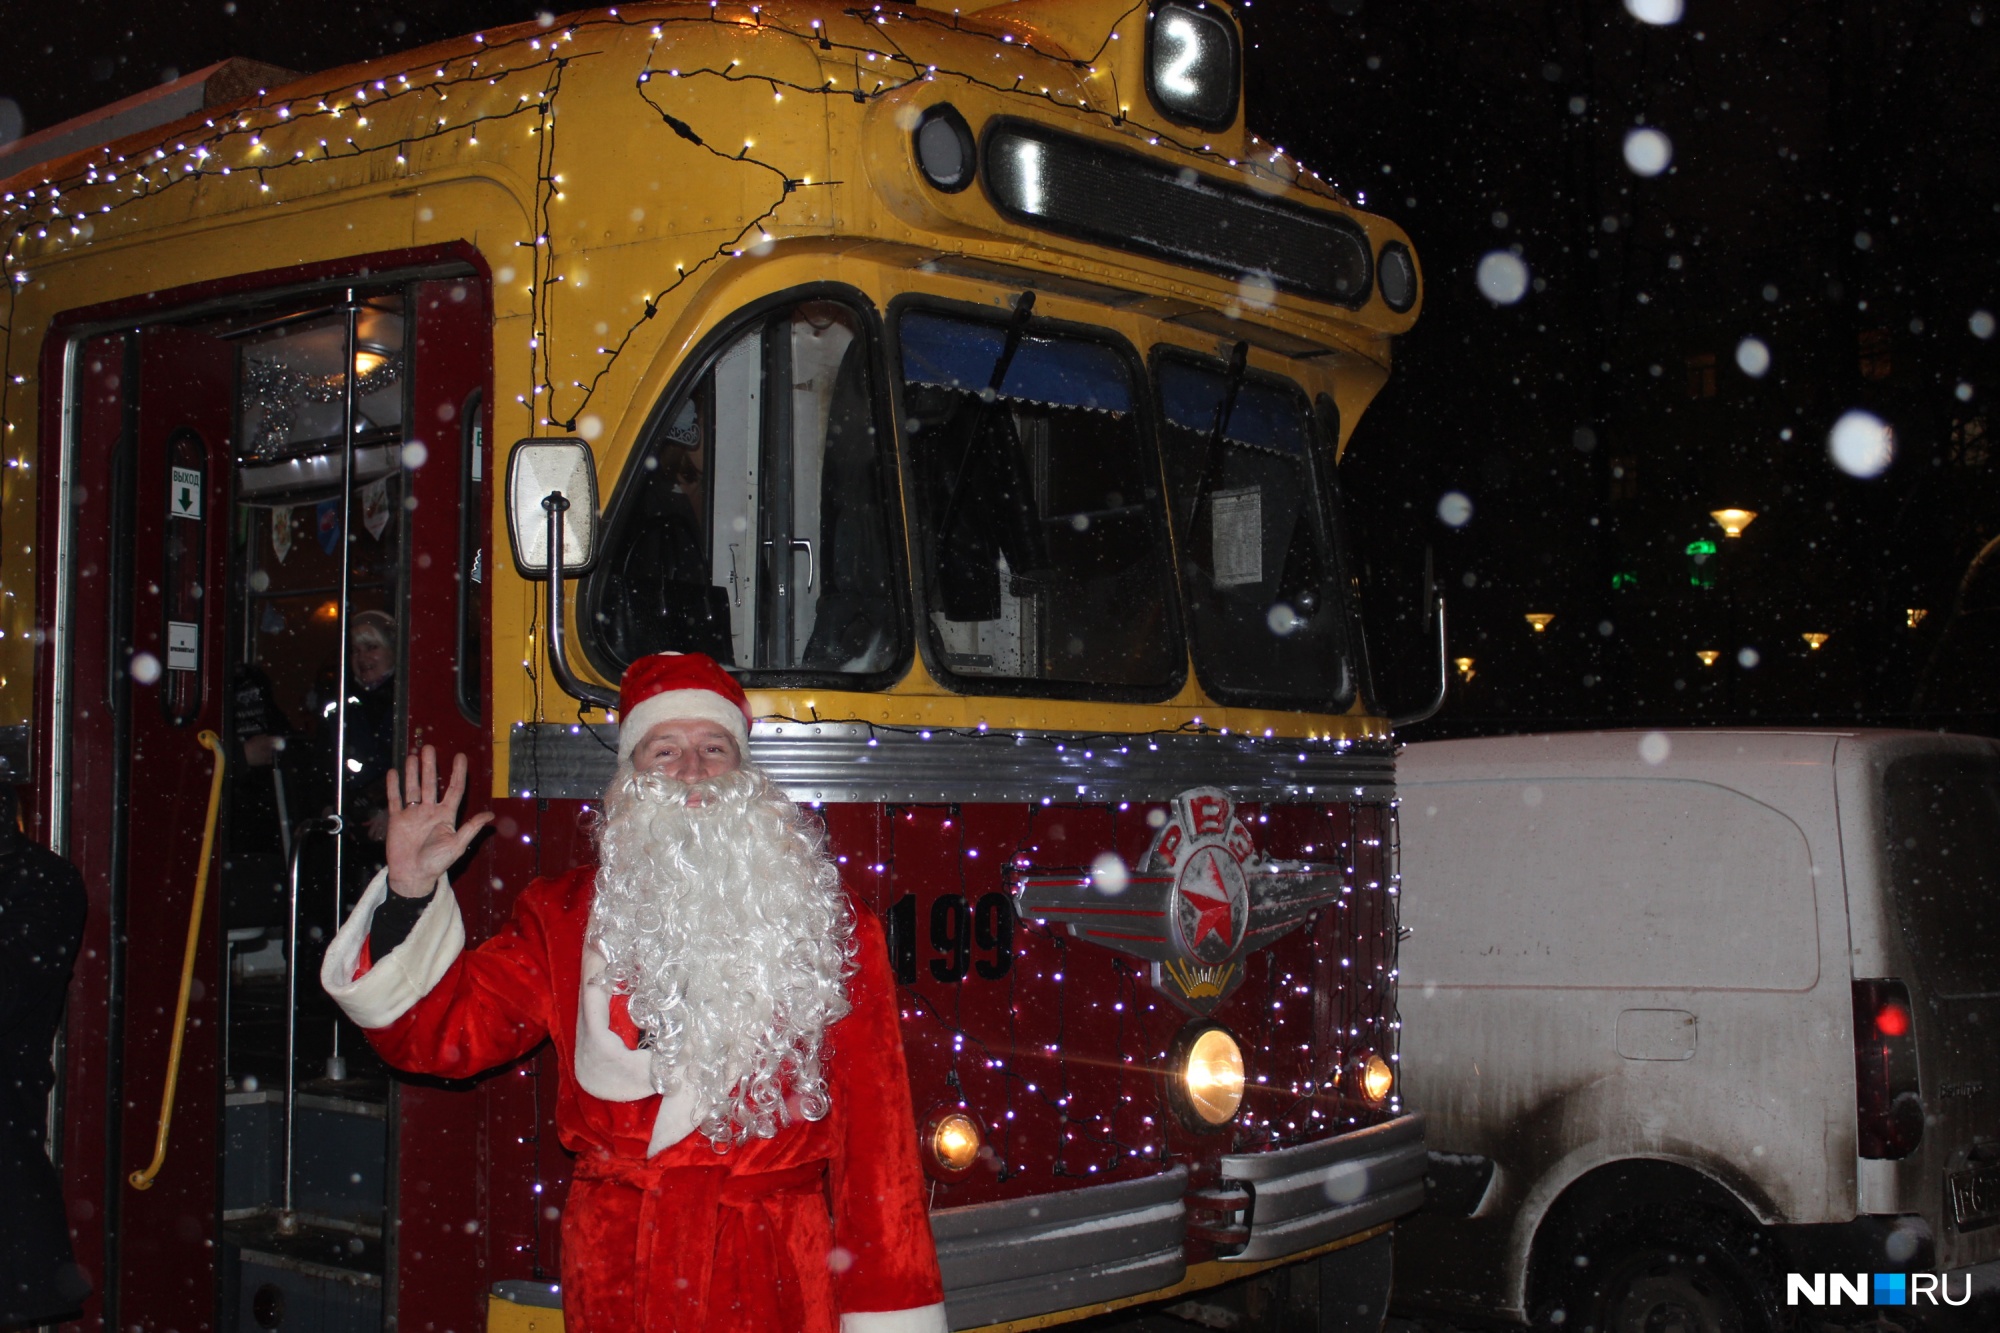 Прокатиться на единственном новогоднем трамвае в Нижнем Новгороде можно будет до конца января